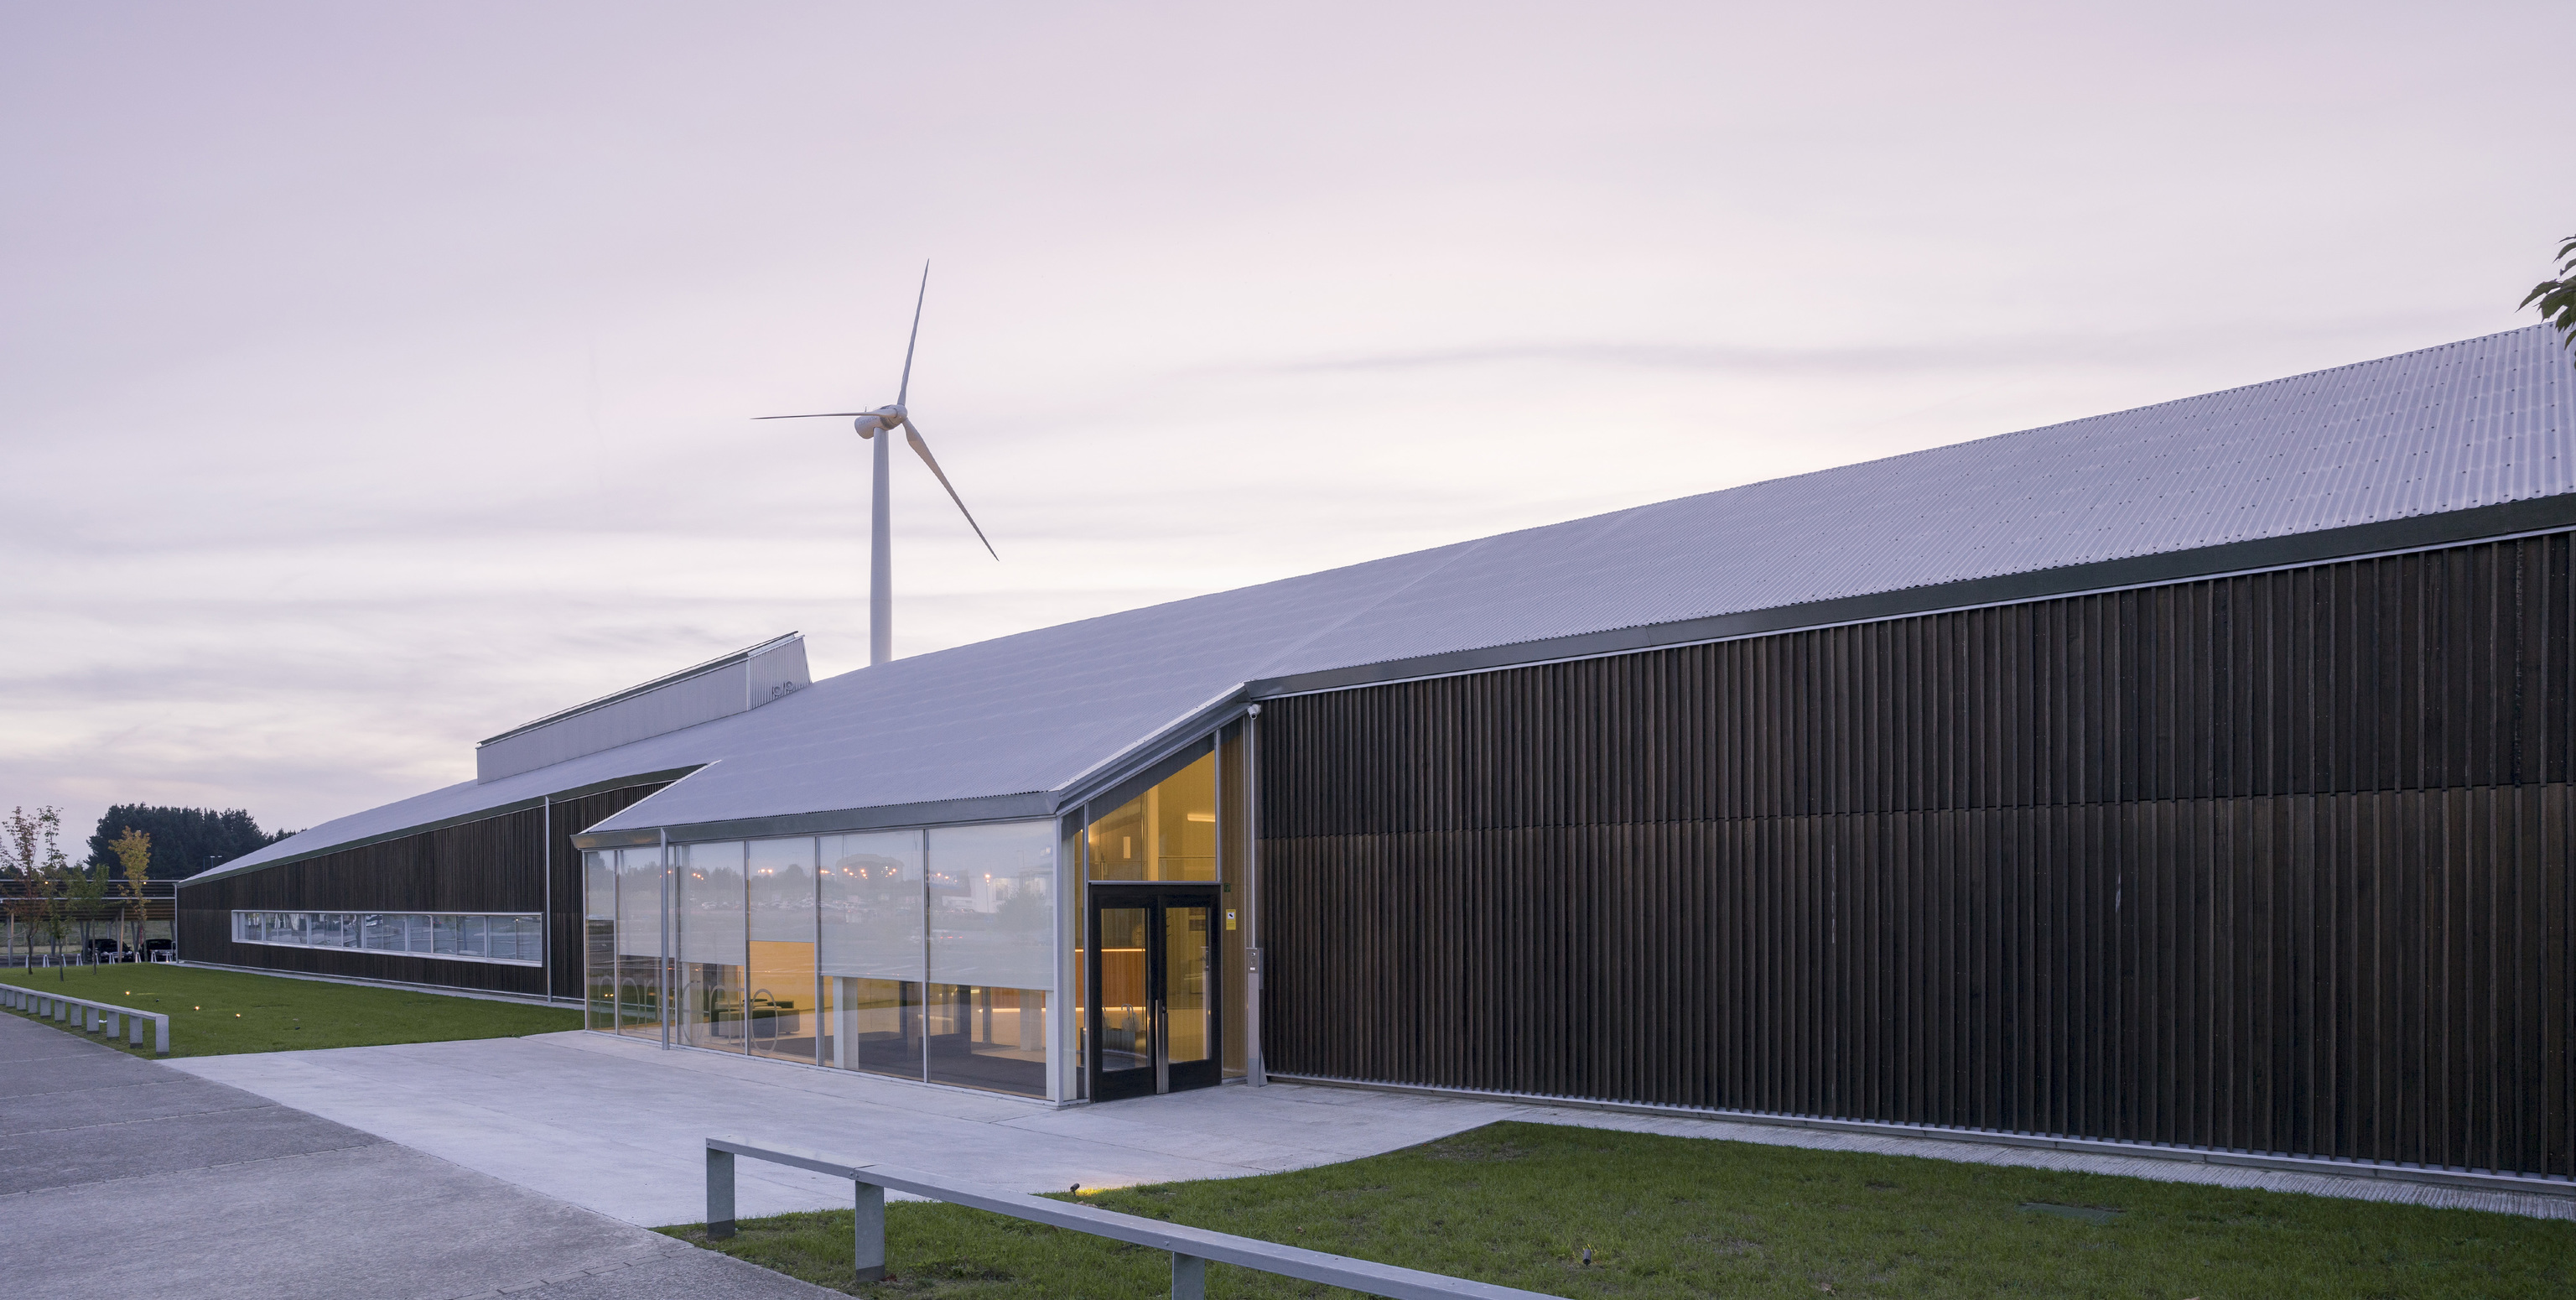 Sede de Norvento, El edificio CIne no solo se autoabastece mediante fuentes 100 % renovables generadas en las propias instalaciones, sino que es capaz de hacerlo totalmente desconectado de la red eléctrica, gracias a un sistema de microrredes y almacenamiento energético.